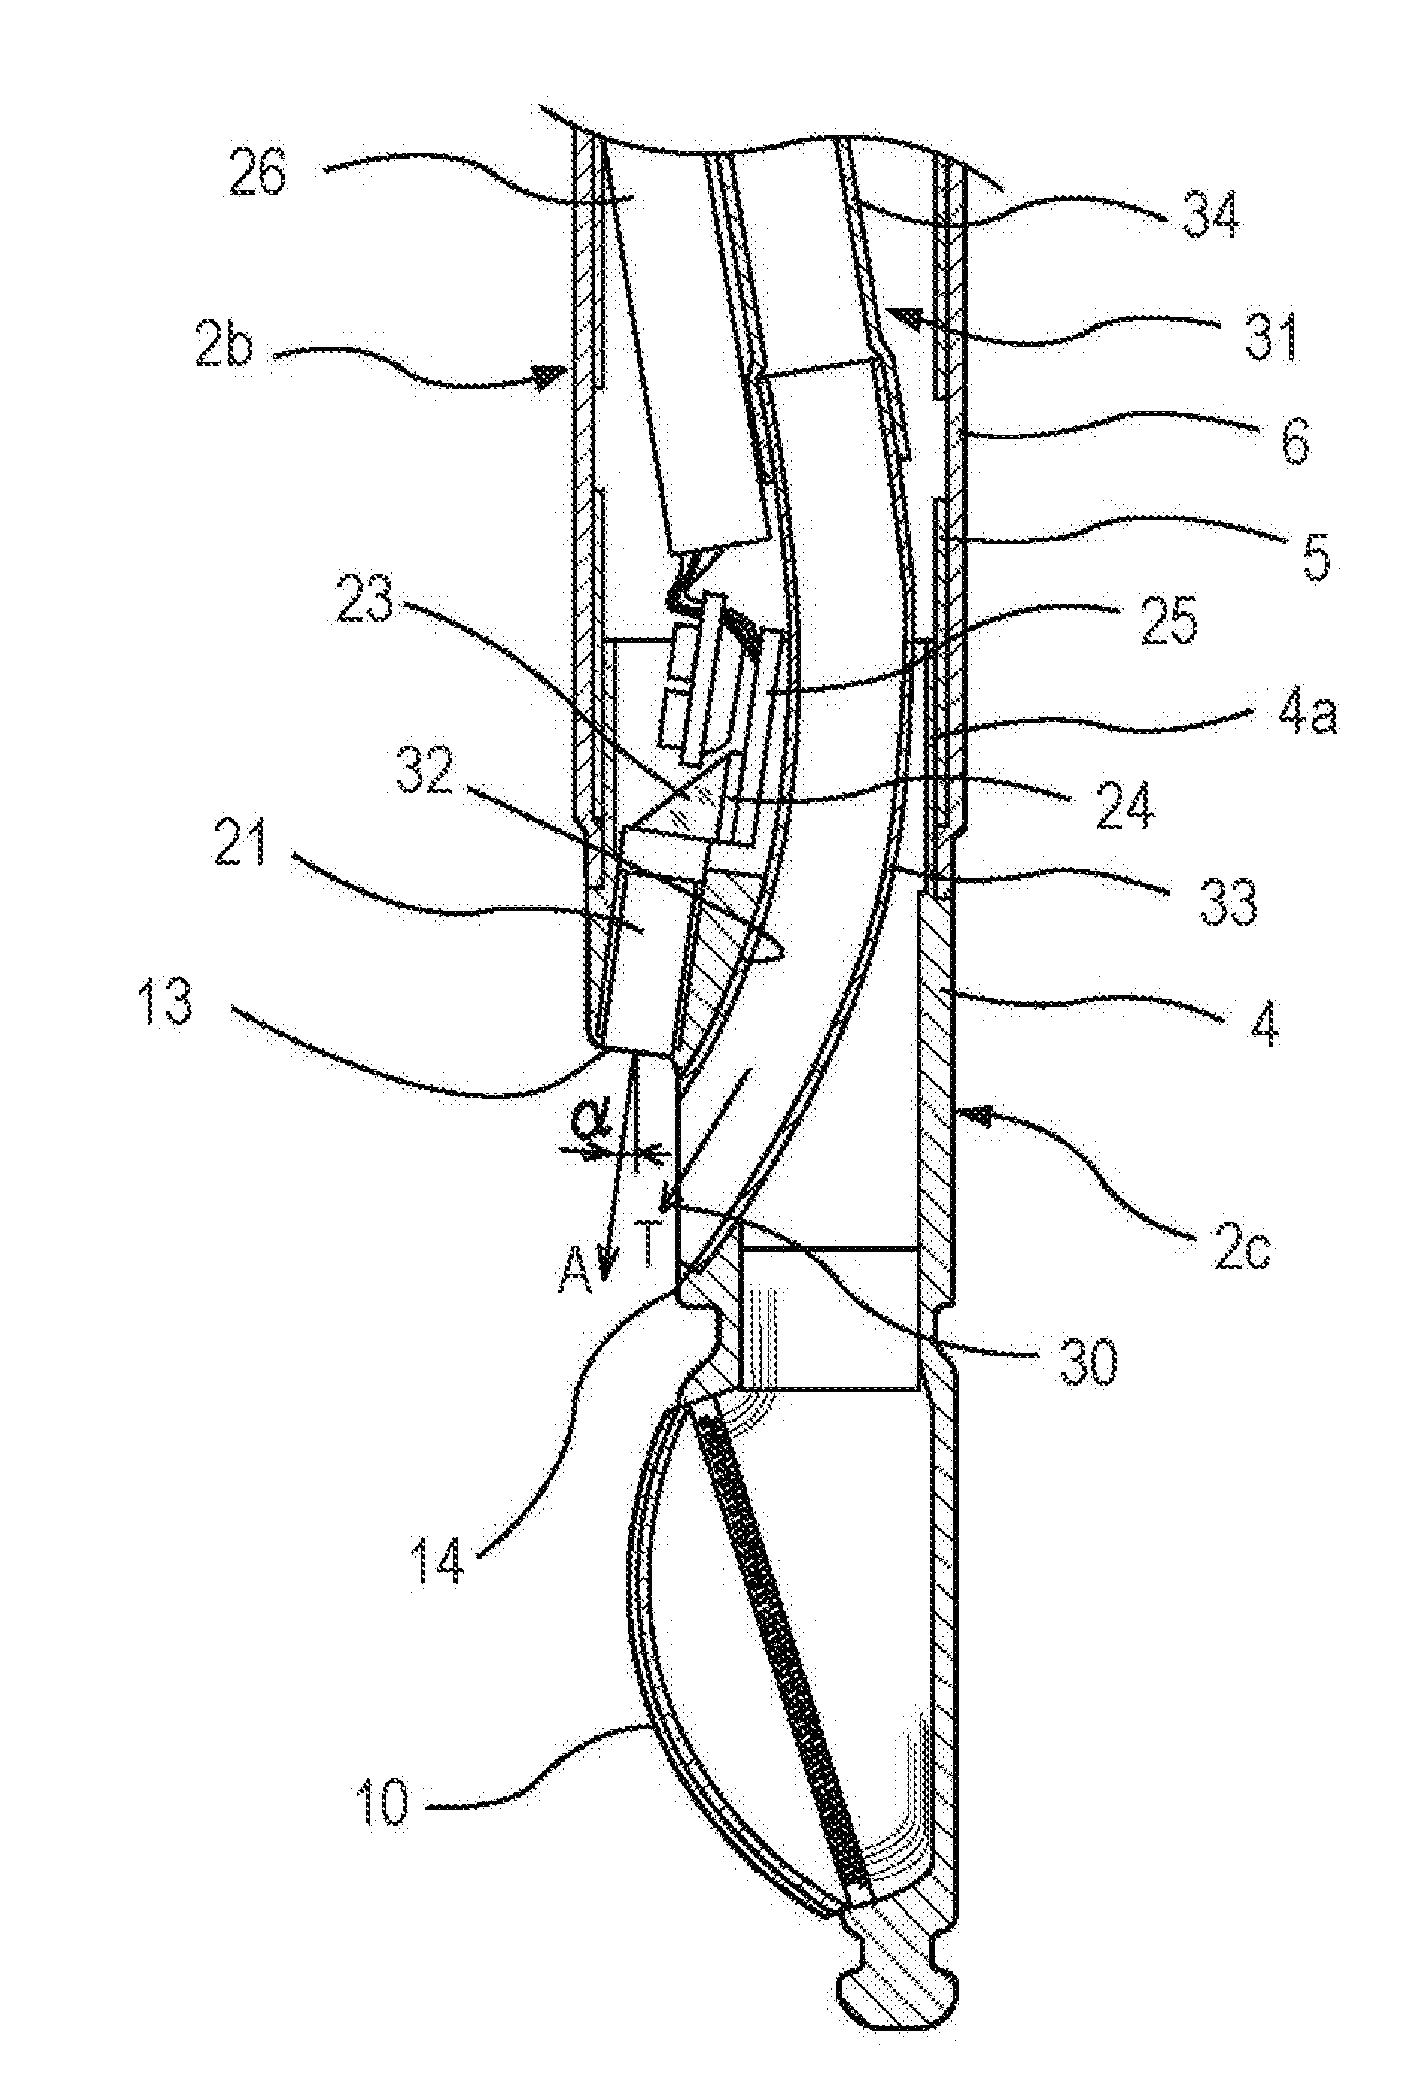 Ultrasonic endoscope